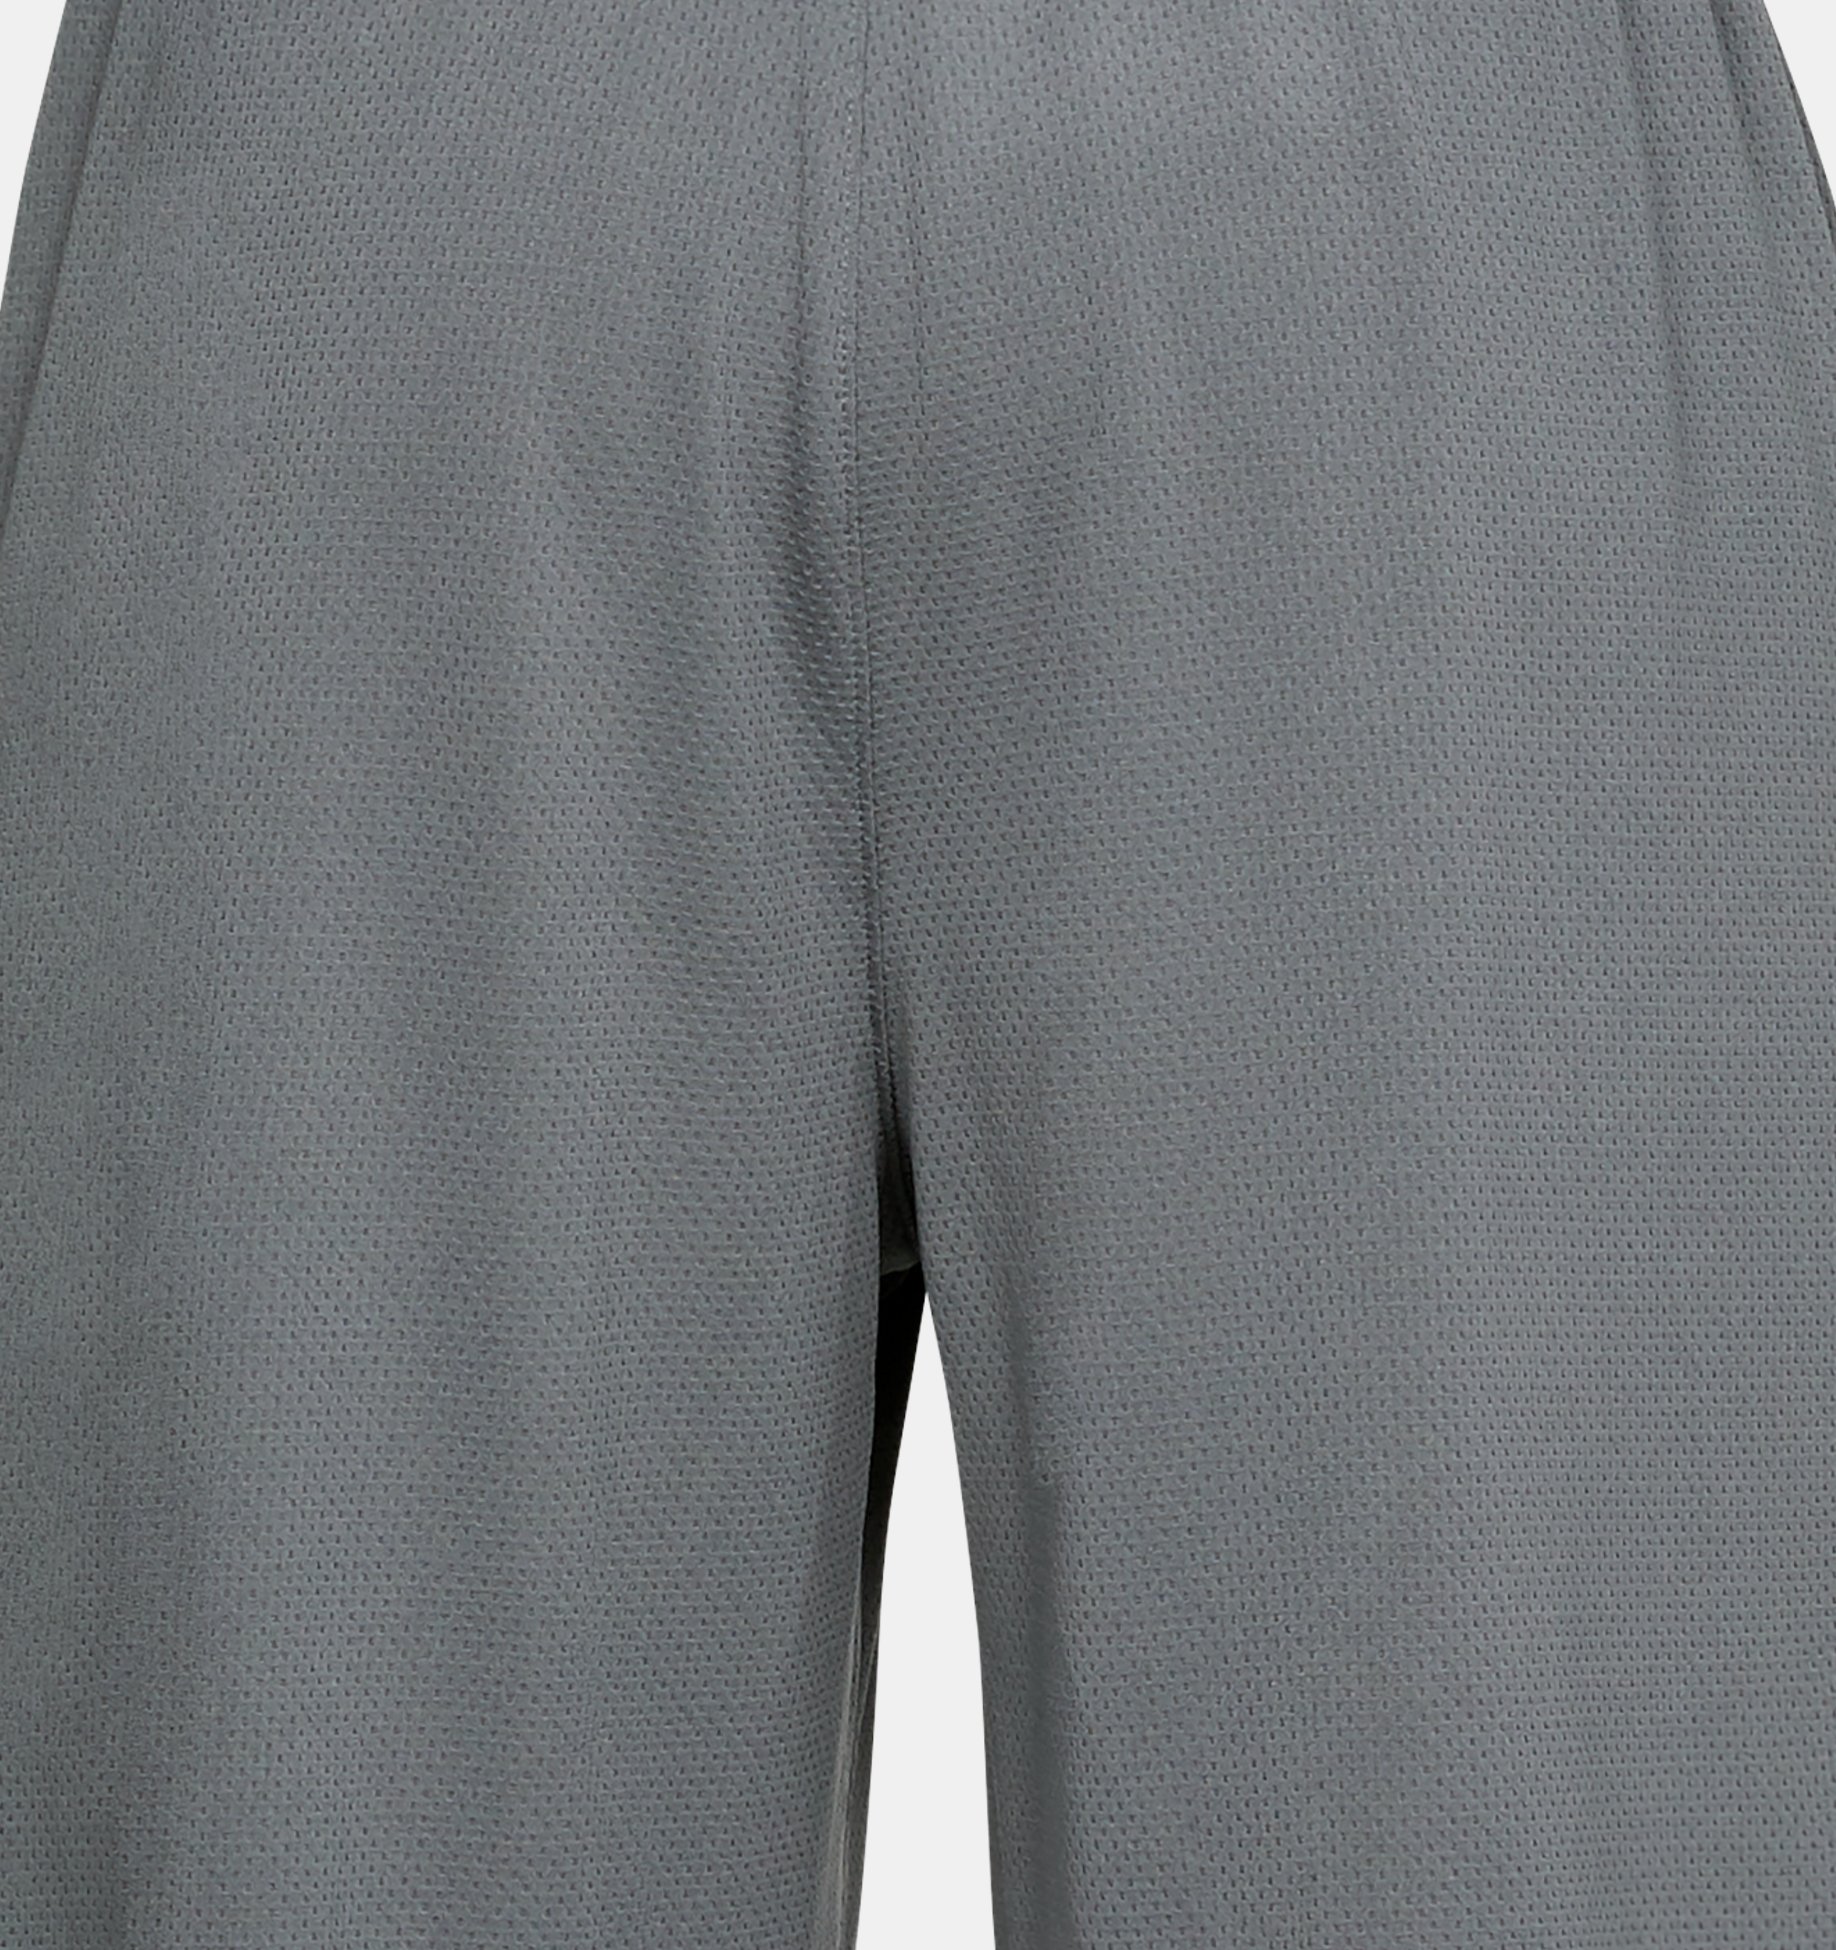 Tek Gear Mens Grey Mesh Athletic Shorts Size Large - beyond exchange